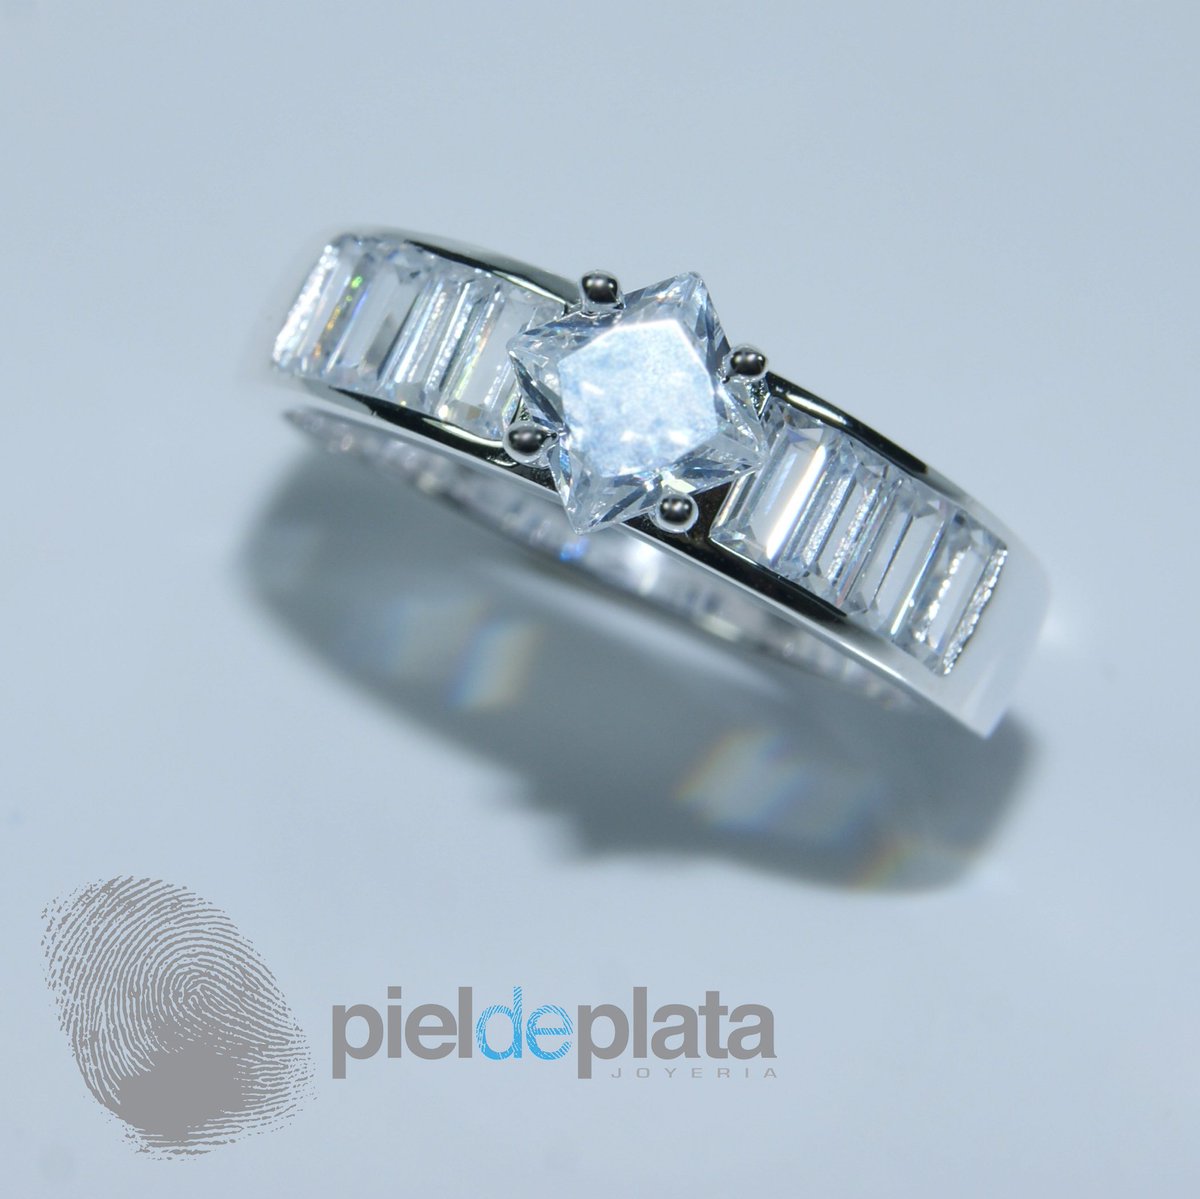 Nueva colección de anillos con circonia! 
.
.
#pieldeplata #circonia #silver #silverjewelry #moda #estilo #brillo #plata #plata925 #andares #amoandares #fashiondrive #plazadelsol #plazapatria #galeriasvallarta #guadalajara #monterrey #puertovallarta #style #insta